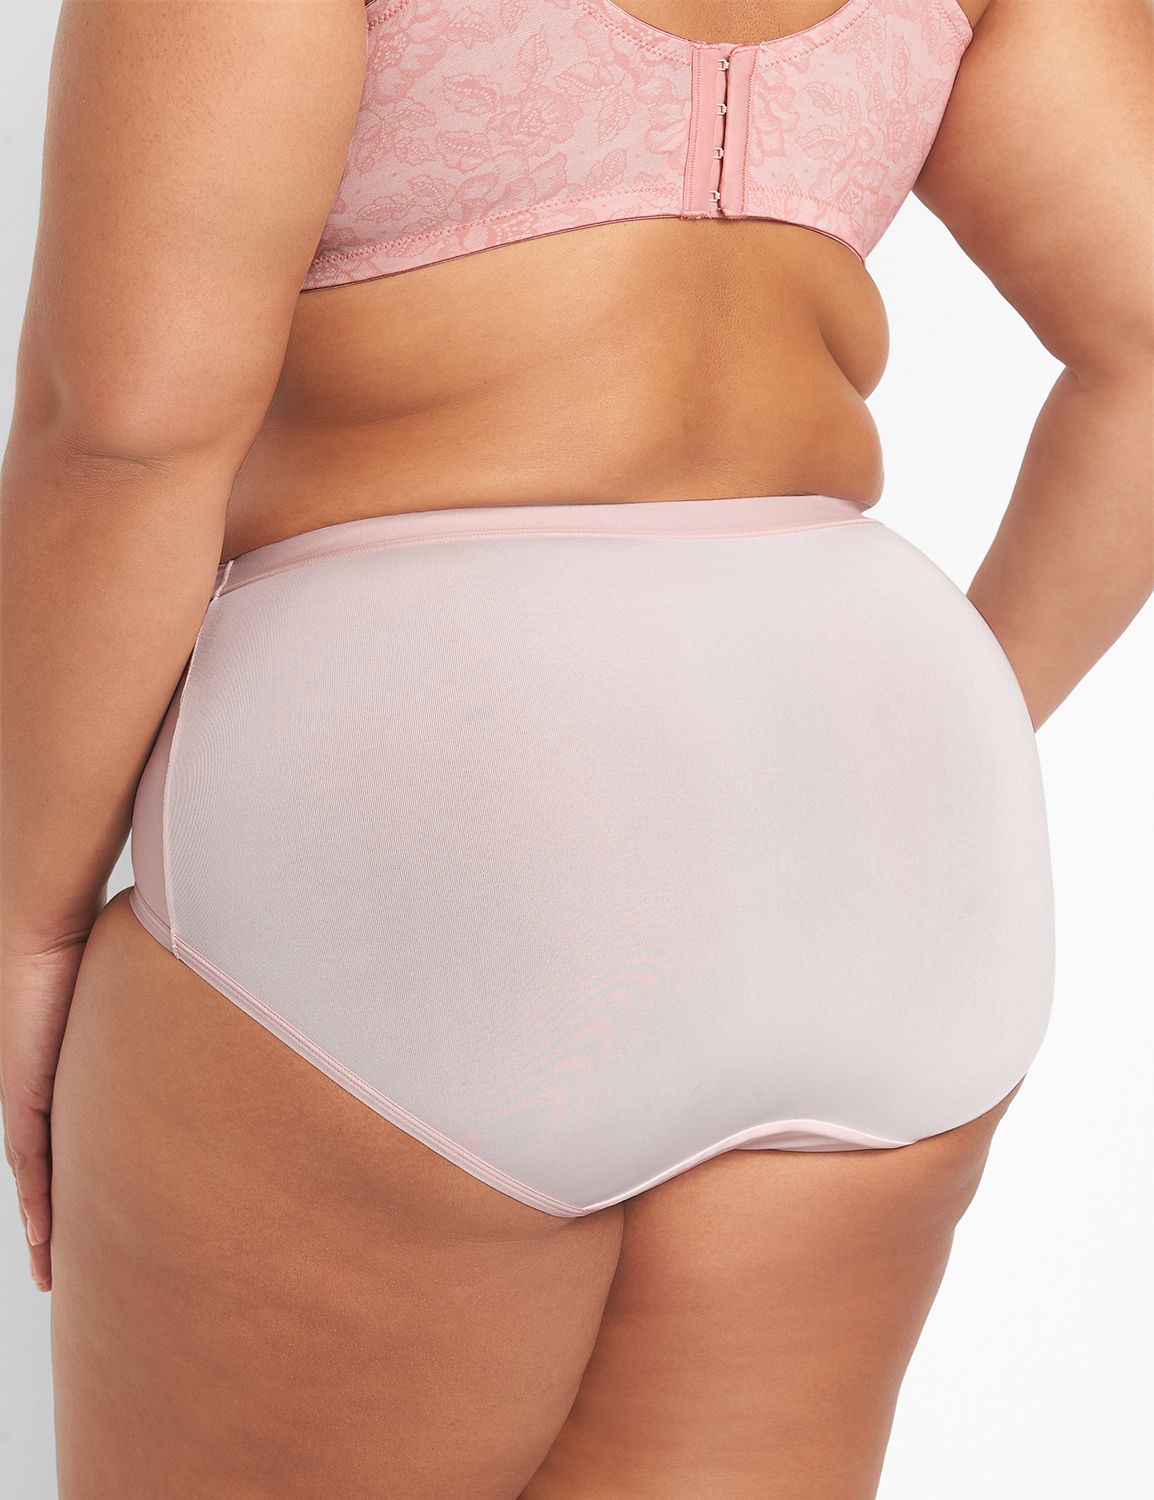 B2246 Smooth Design Comfortable Bra Brief Underwear Women's Fancy